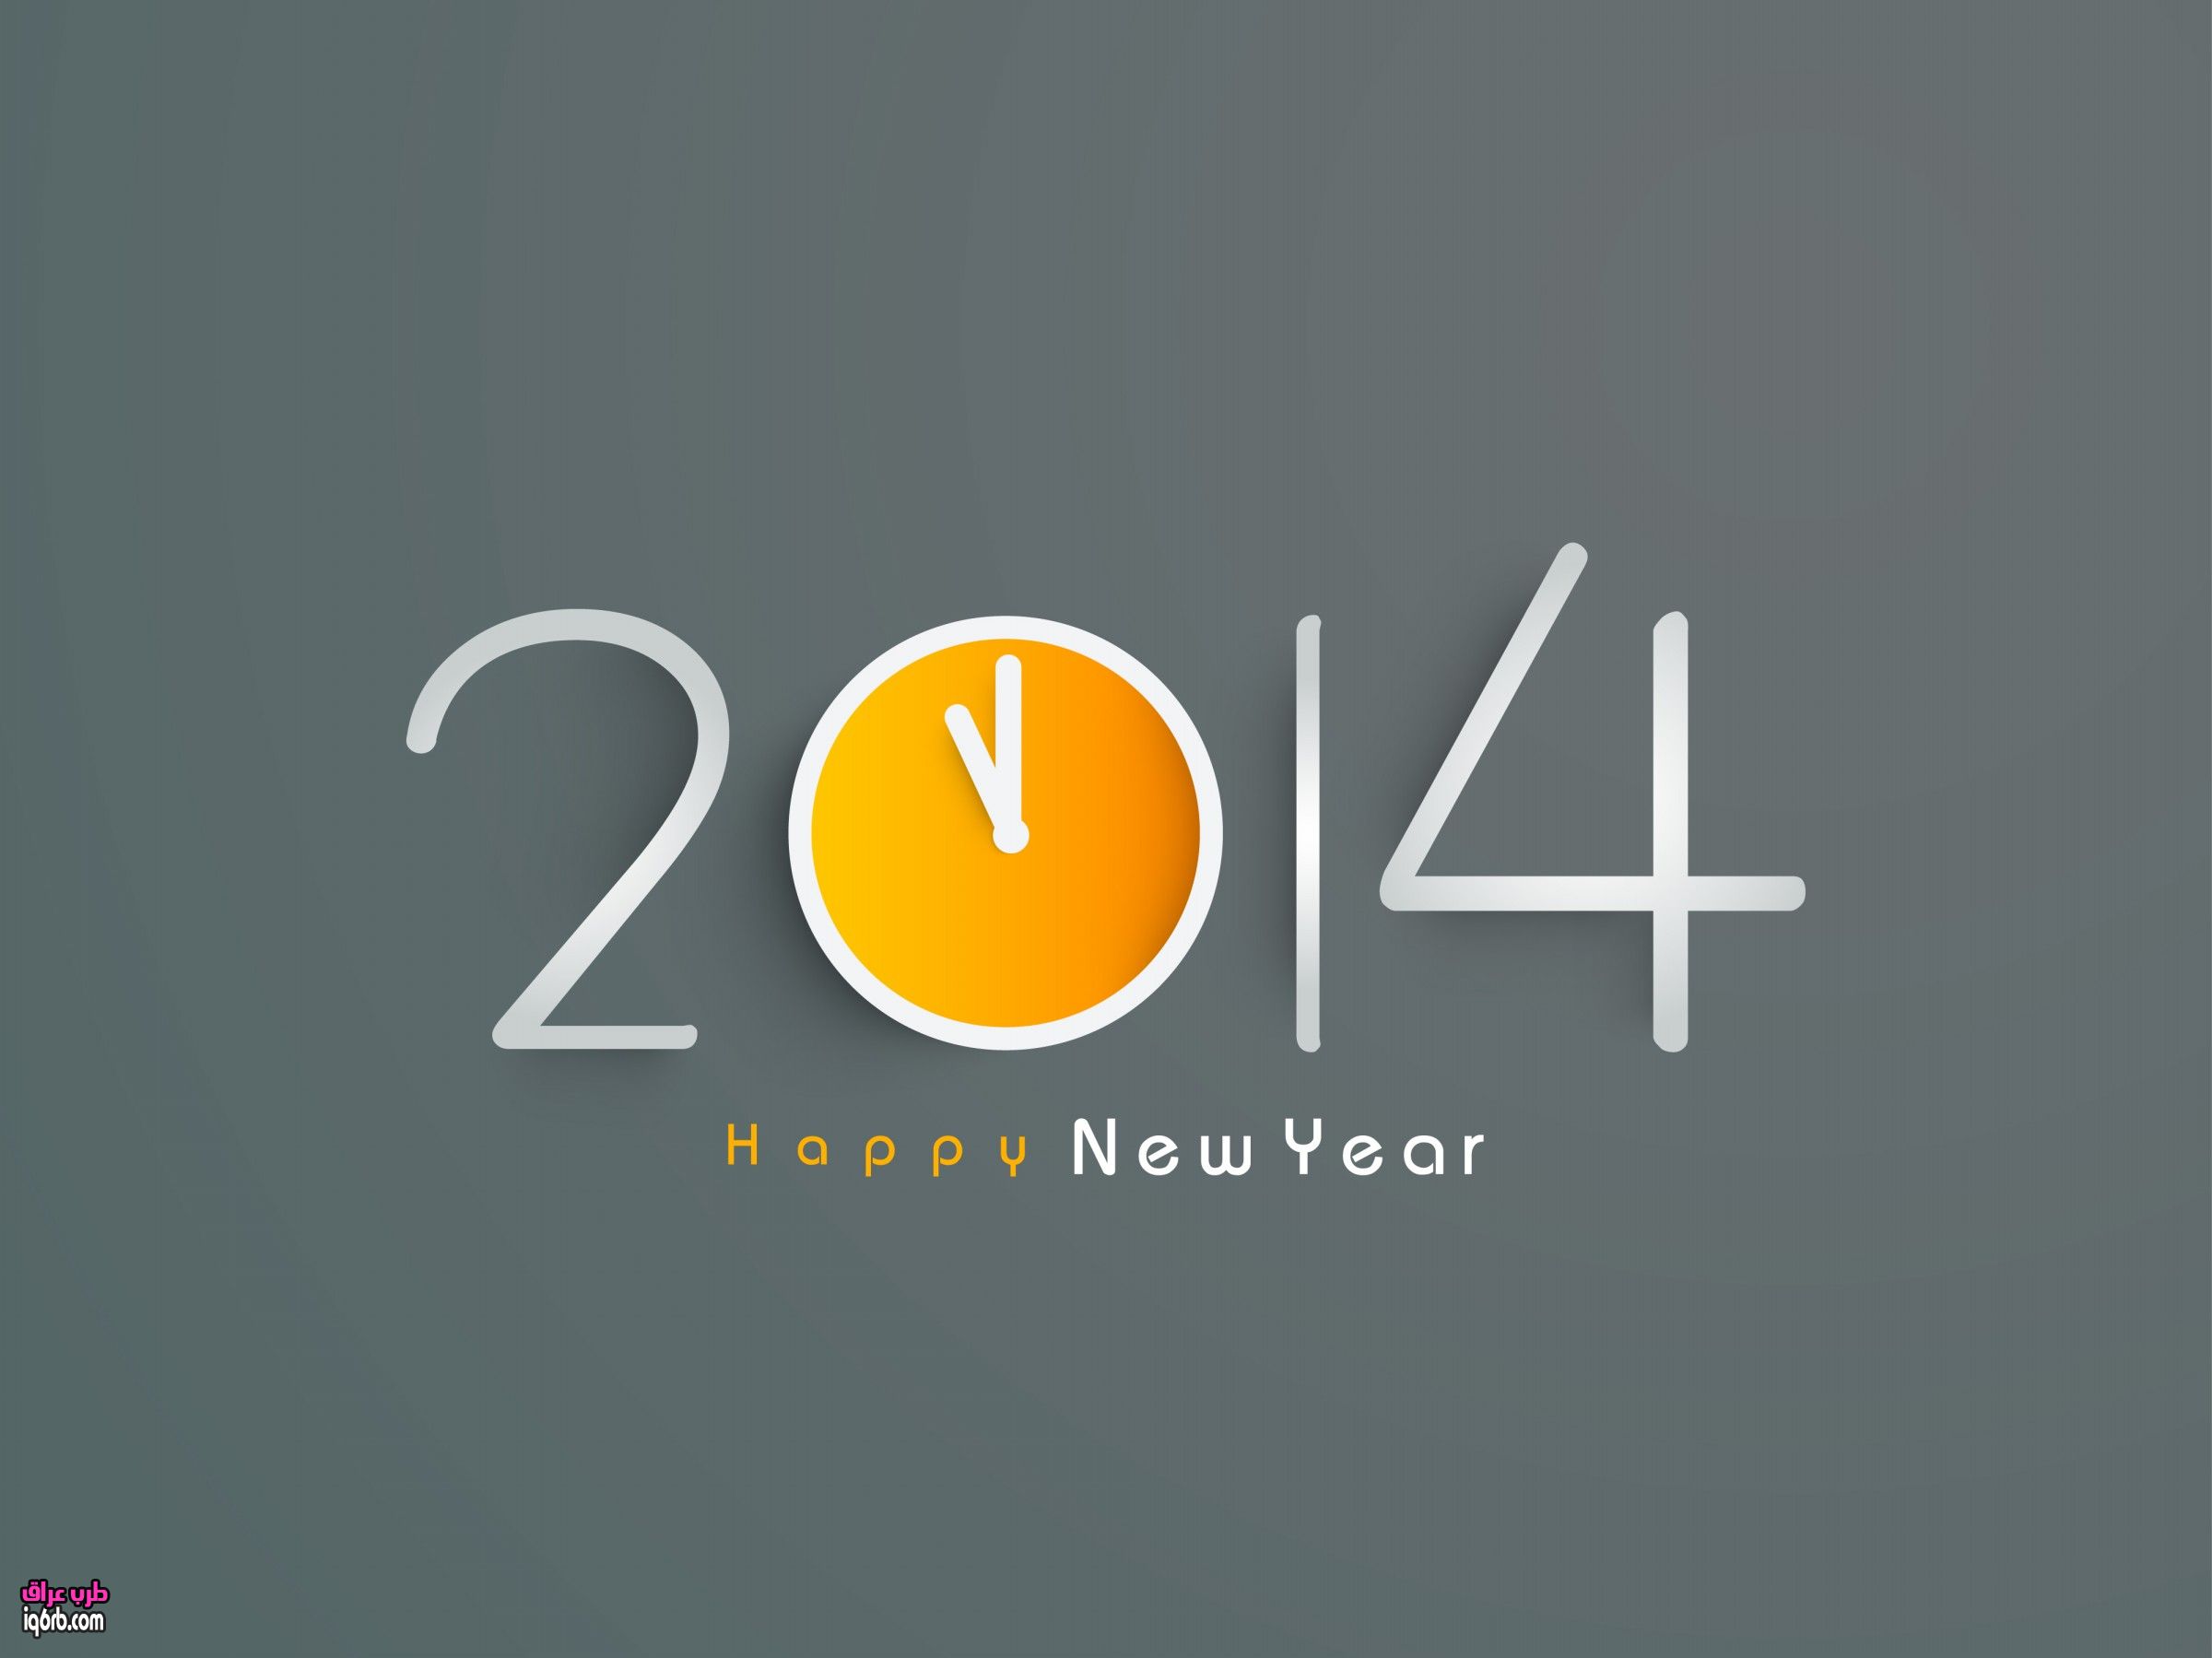 صور خلفيات 3d تهنئة راس السنة الميلادية 2014 , صور بطاقات عالية الجودة للتهنئة براس السنة الميلاية 2014